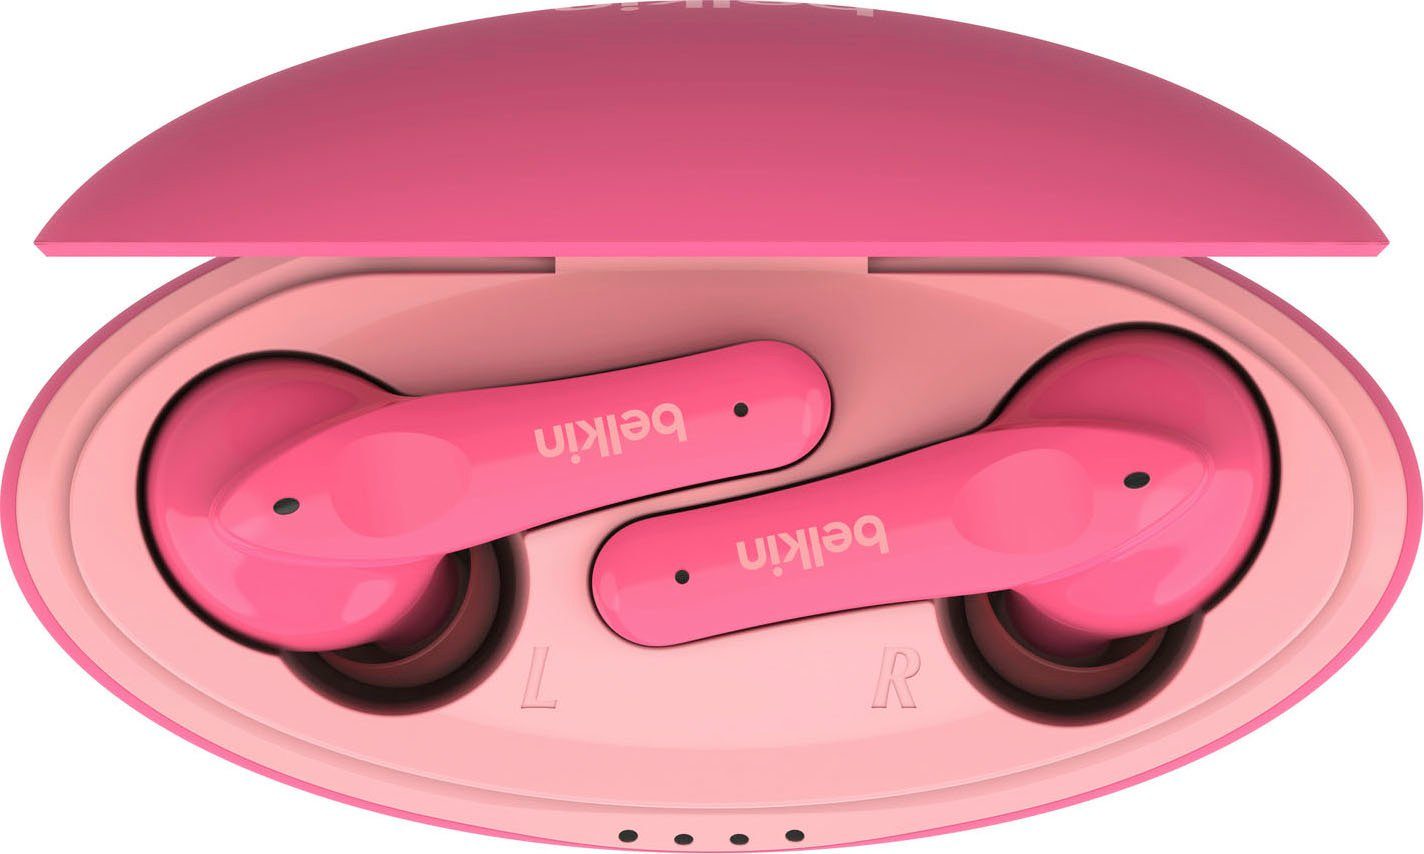 Belkin SOUNDFORM NANO - Kinder am begrenzt; wireless In-Ear-Kopfhörer (auf Kopfhörer) Kopfhörer pink dB 85